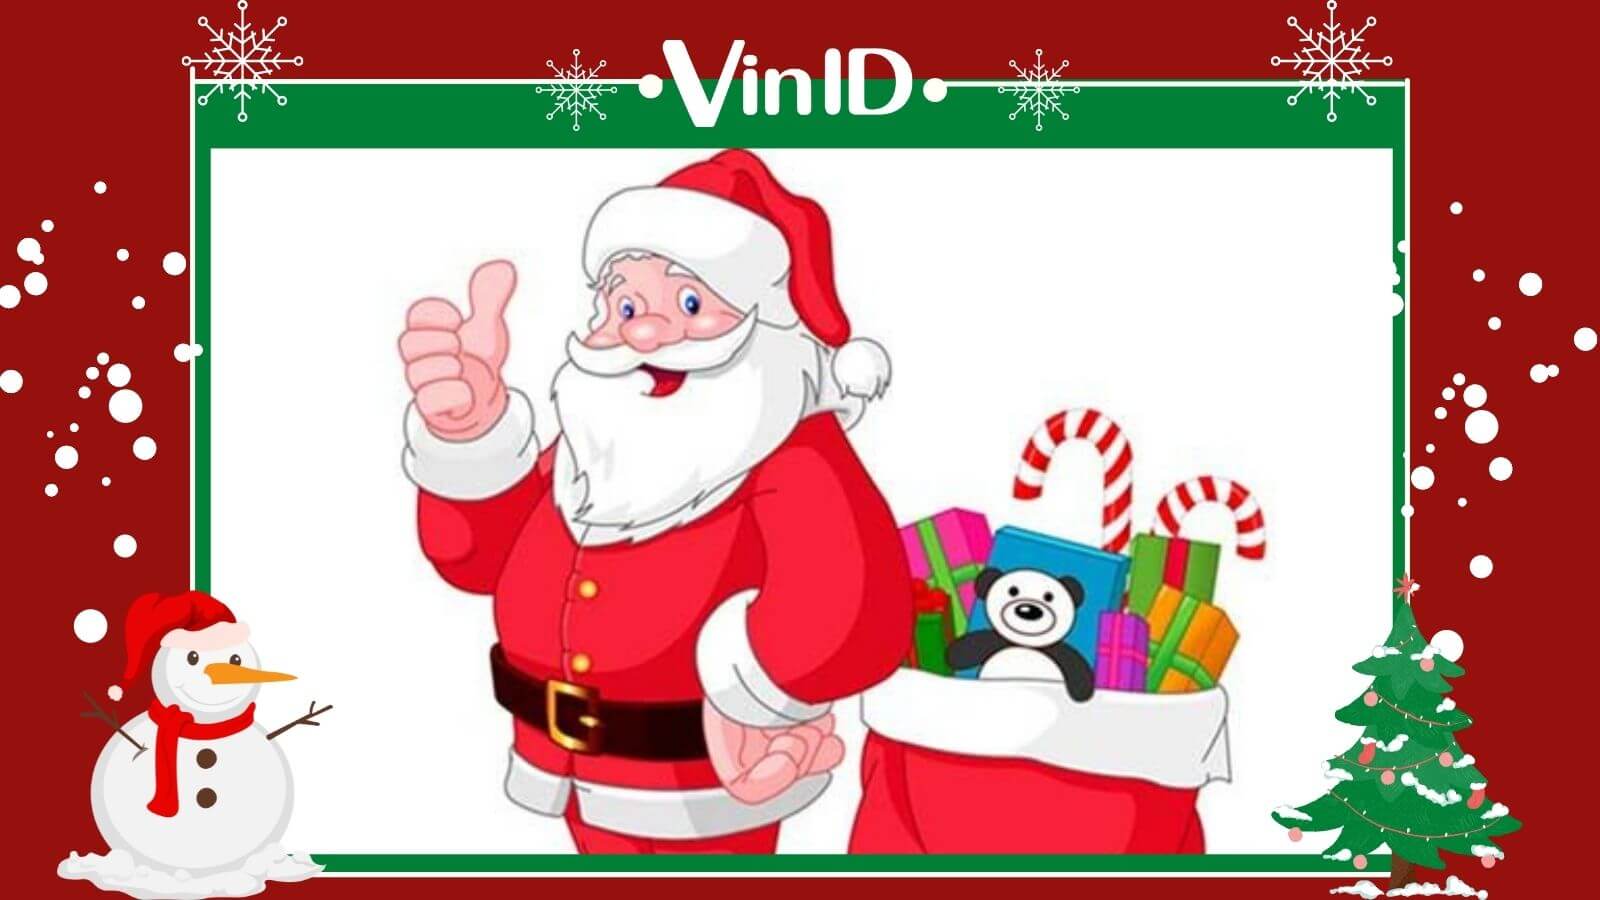 Santa Claus: Hãy tưởng tượng Santa Claus đang cười tươi và chạy trên mái nhà để tặng quà cho các bé. Bức ảnh đầy lễ hội này chắc chắn sẽ đem lại cho bạn không khí Giáng Sinh và niềm vui đầy trọn vẹn!